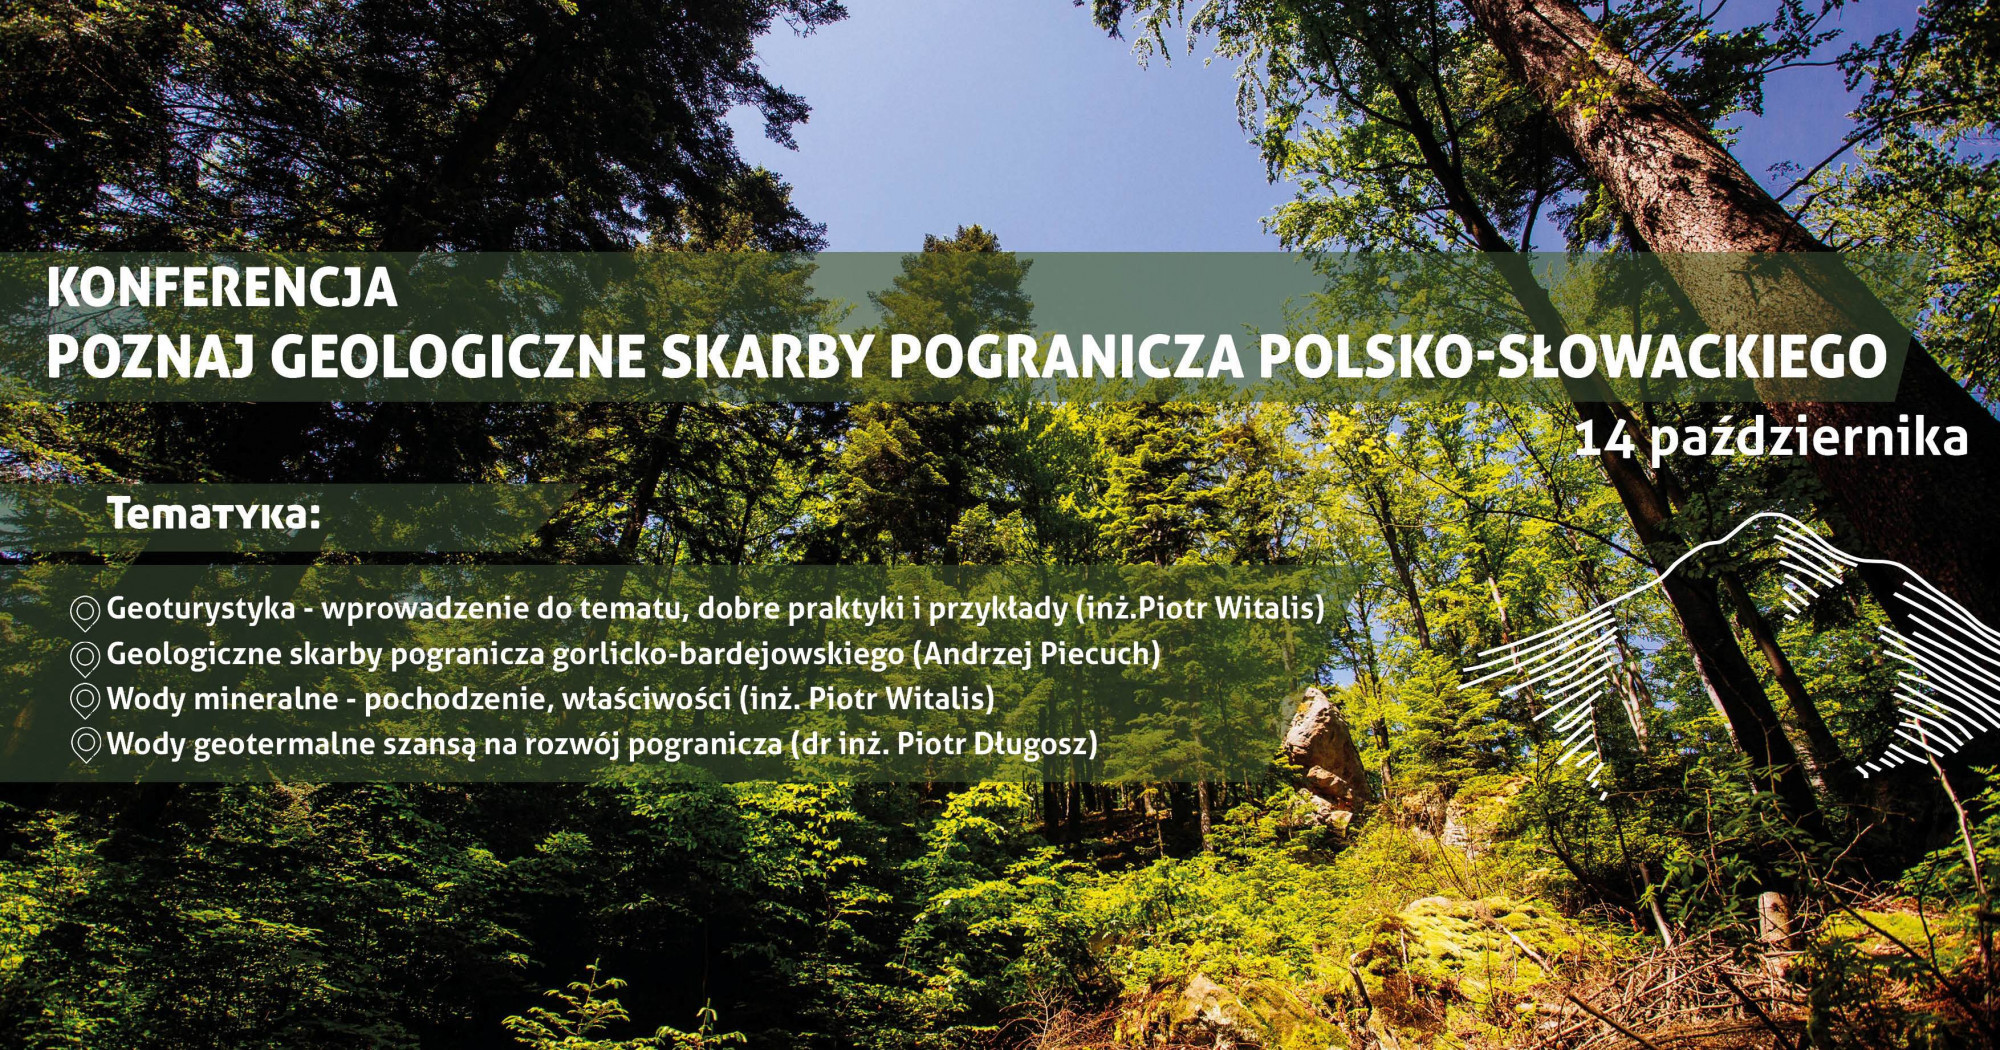 Trwa konferencja online „Poznaj geologiczne skarby pogranicza polsko-słowackiego”